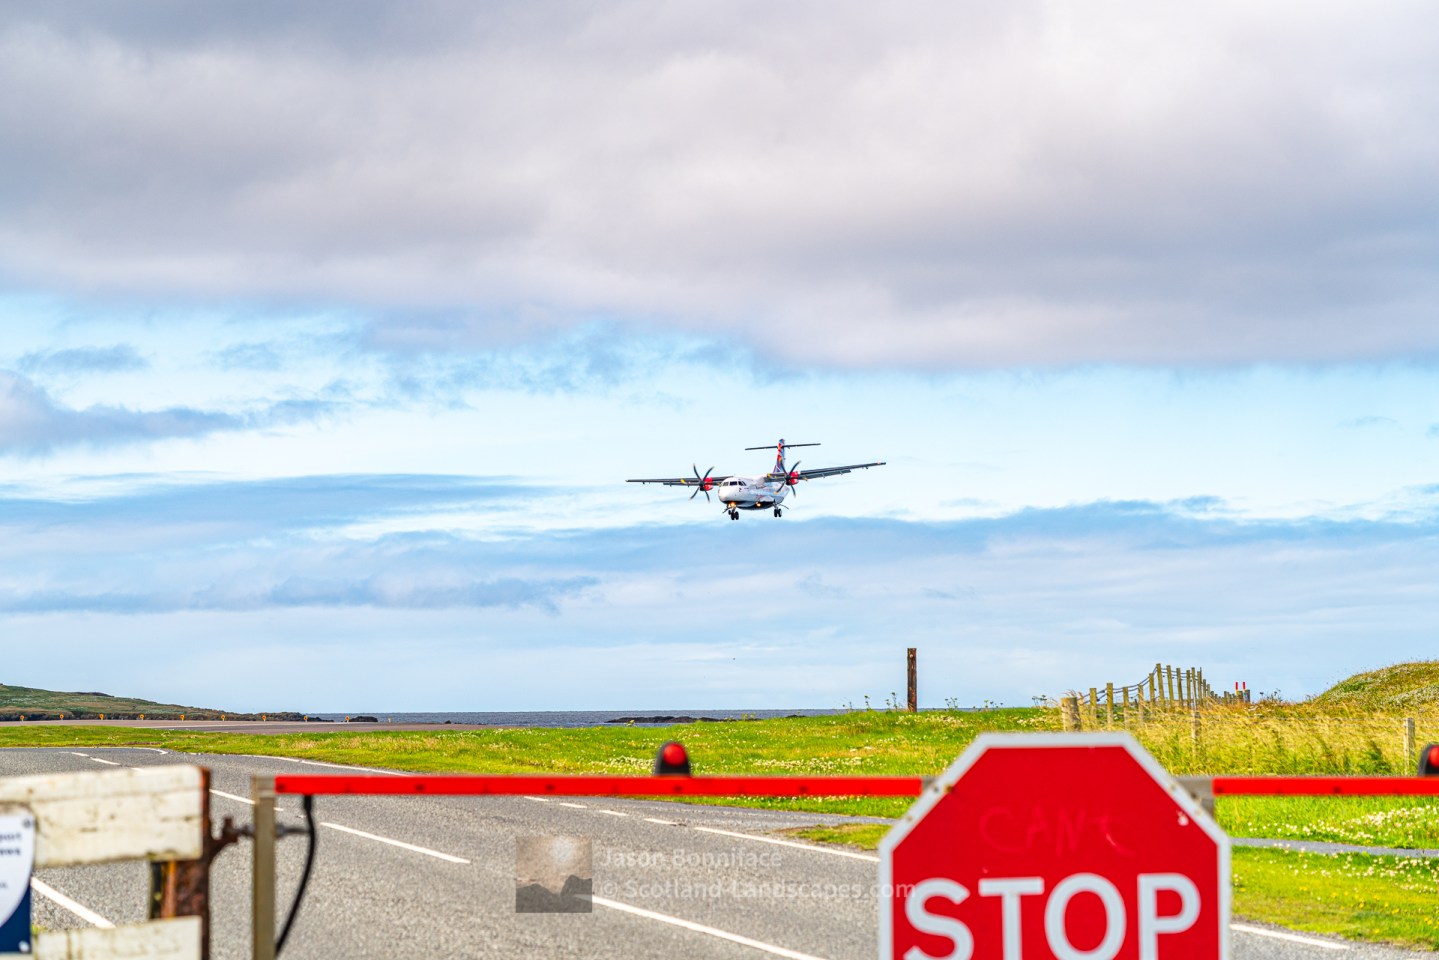 Main Road Closure for Arrival - Sumburgh Airport, Shetland